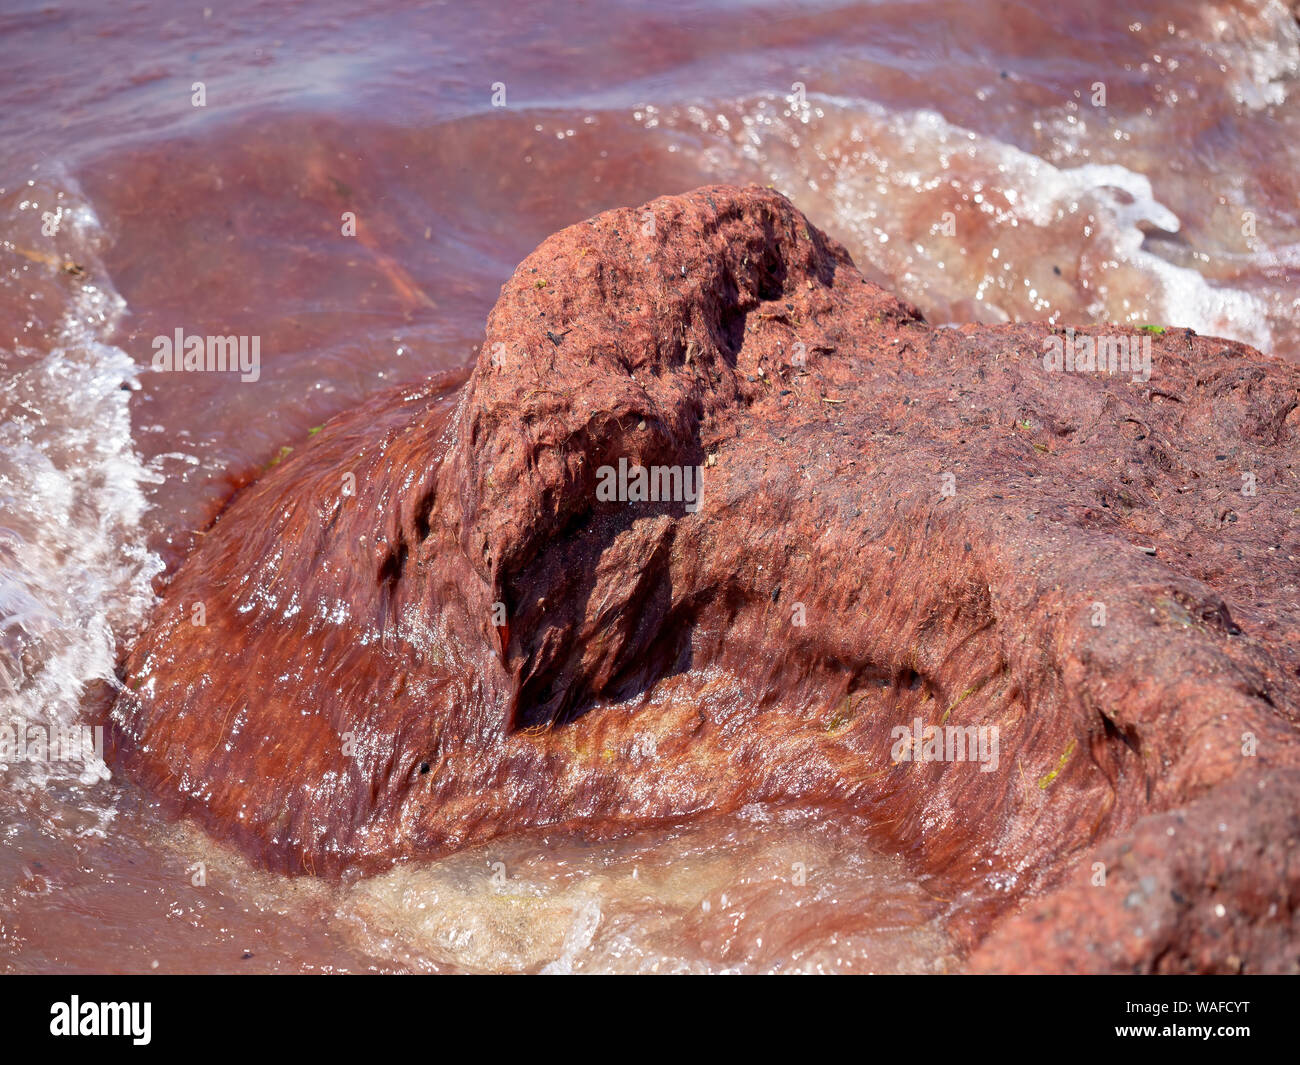 Marée rouge aka la prolifération des algues sur la collecte de roche. Le phytoplancton dans la mer Méditerranée au large de la côte italienne. Ici - au nord de la Toscane . Banque D'Images